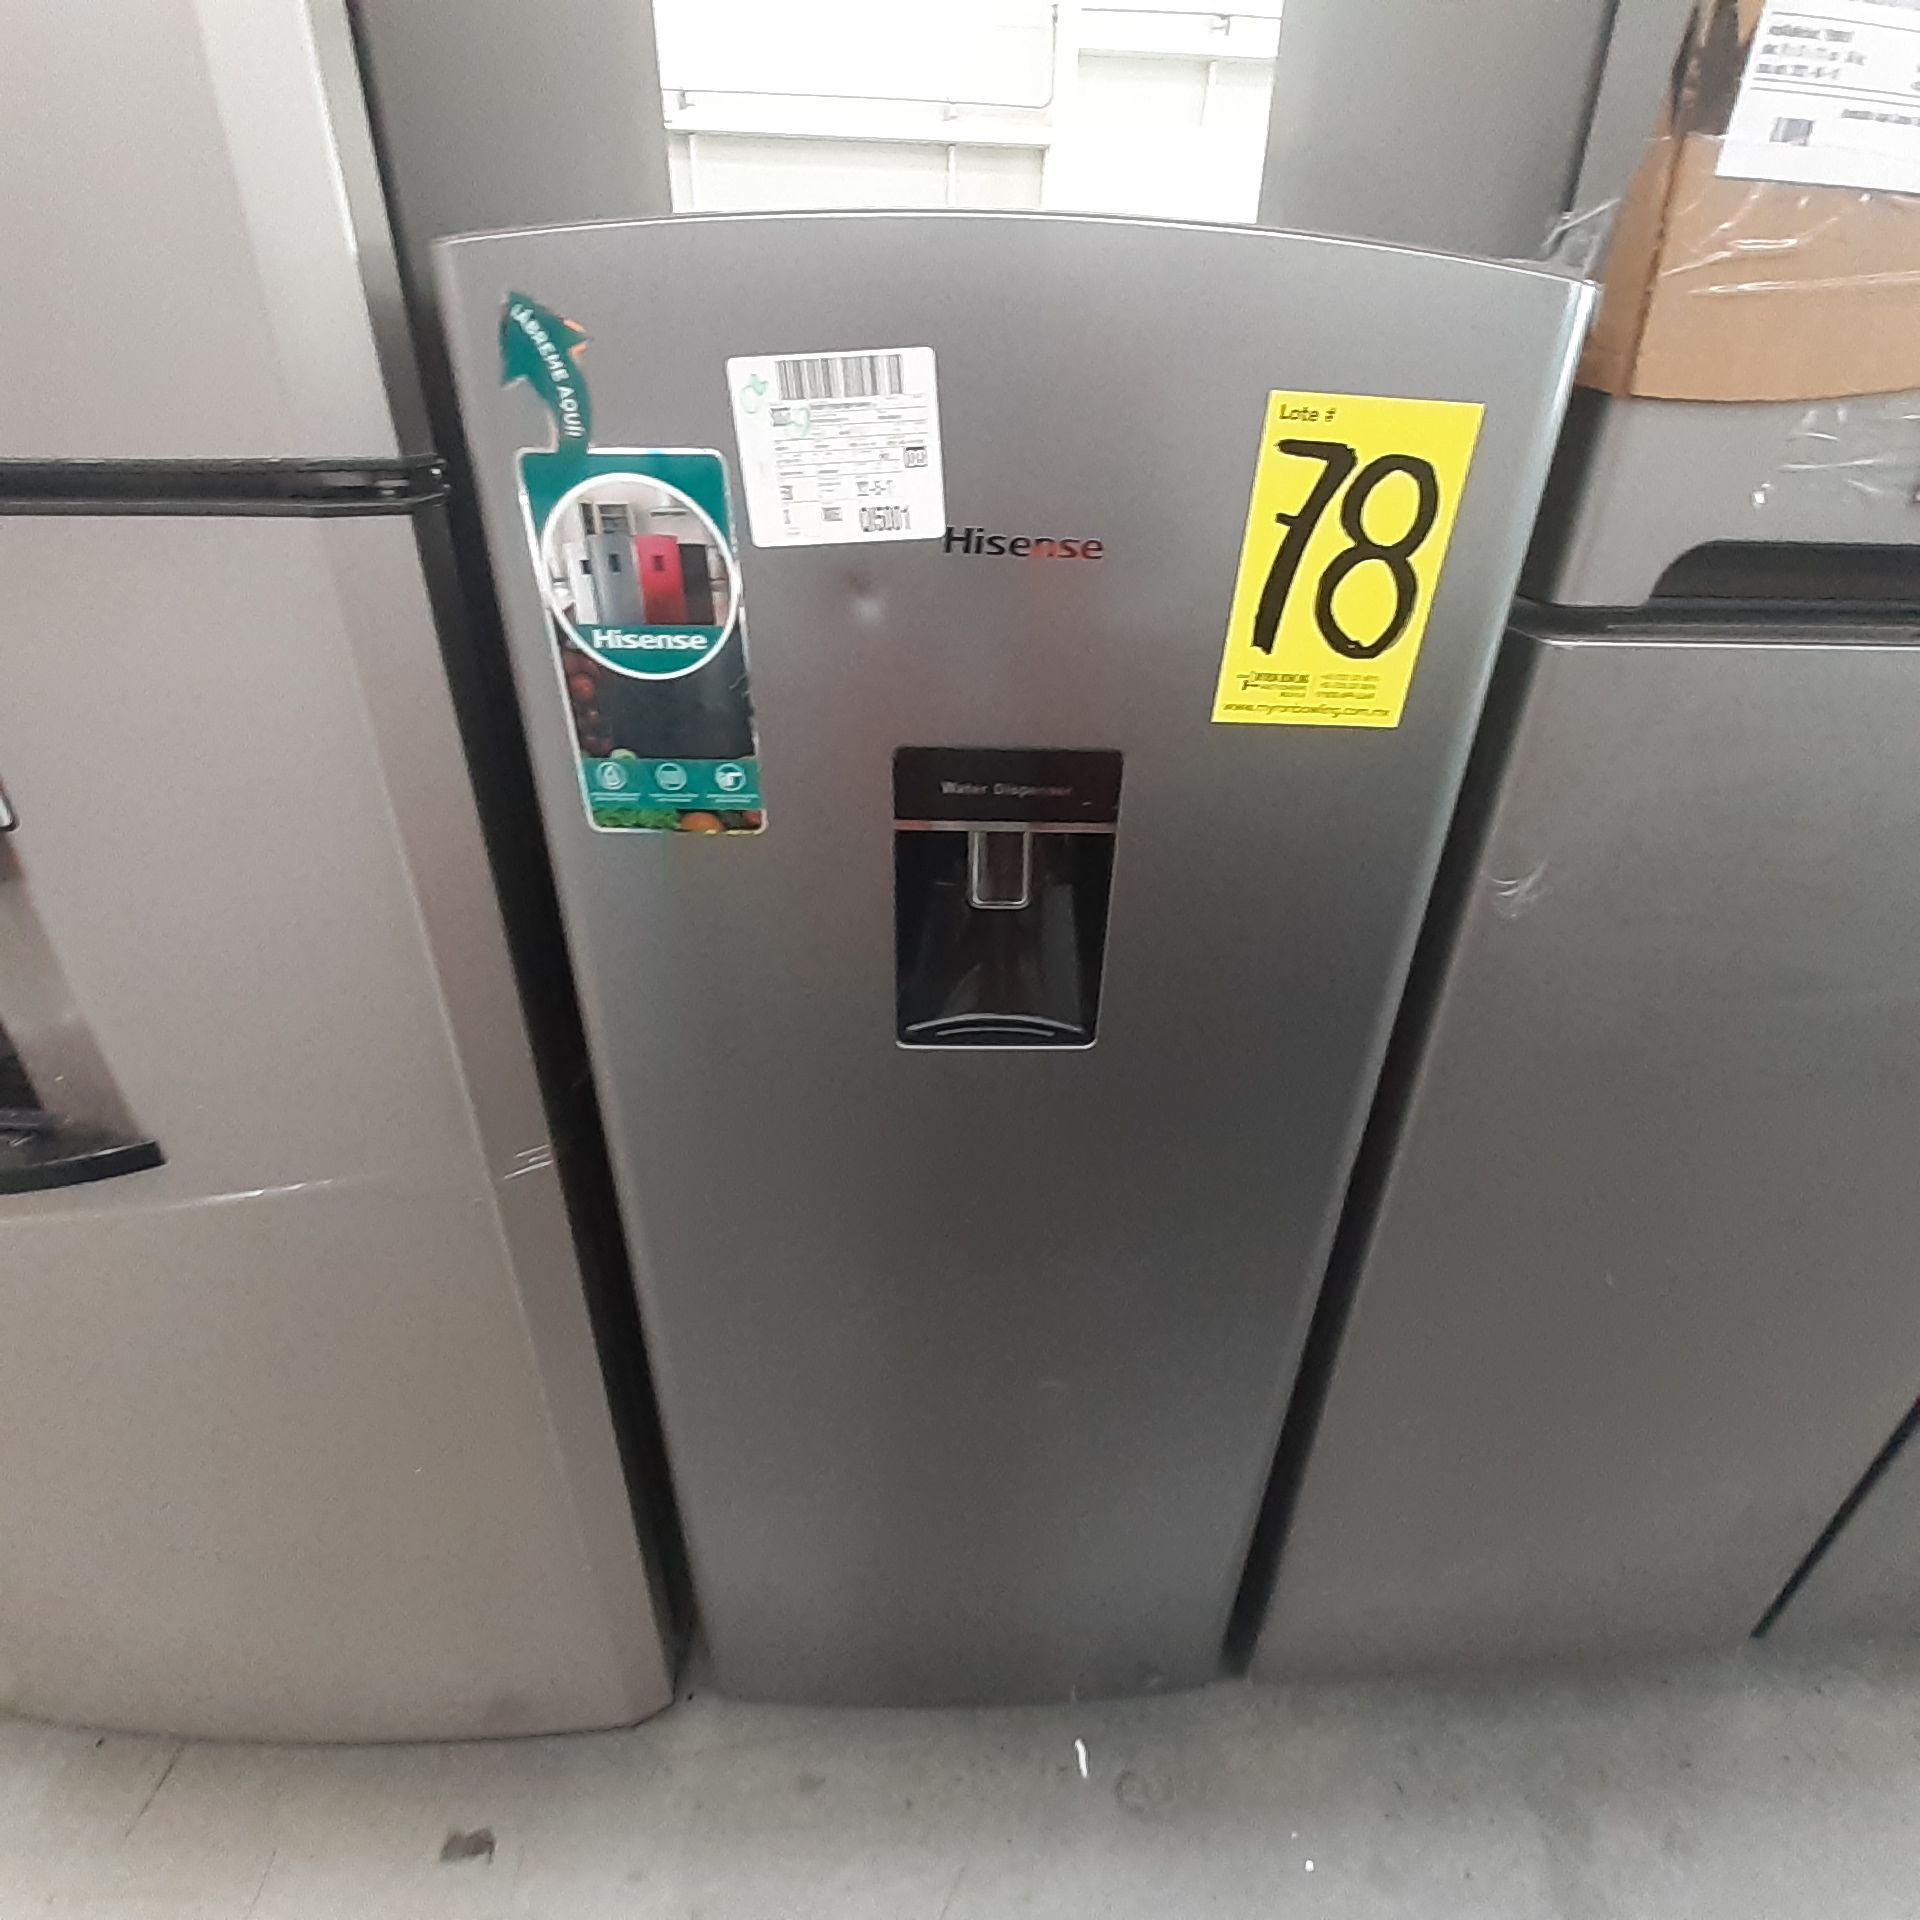 Lote De 3 Refrigeradores: 1 Refrigerador Marca Whirlpool, 1 Refrigerador Marca Mabe, 1 Refrigerador - Image 20 of 22